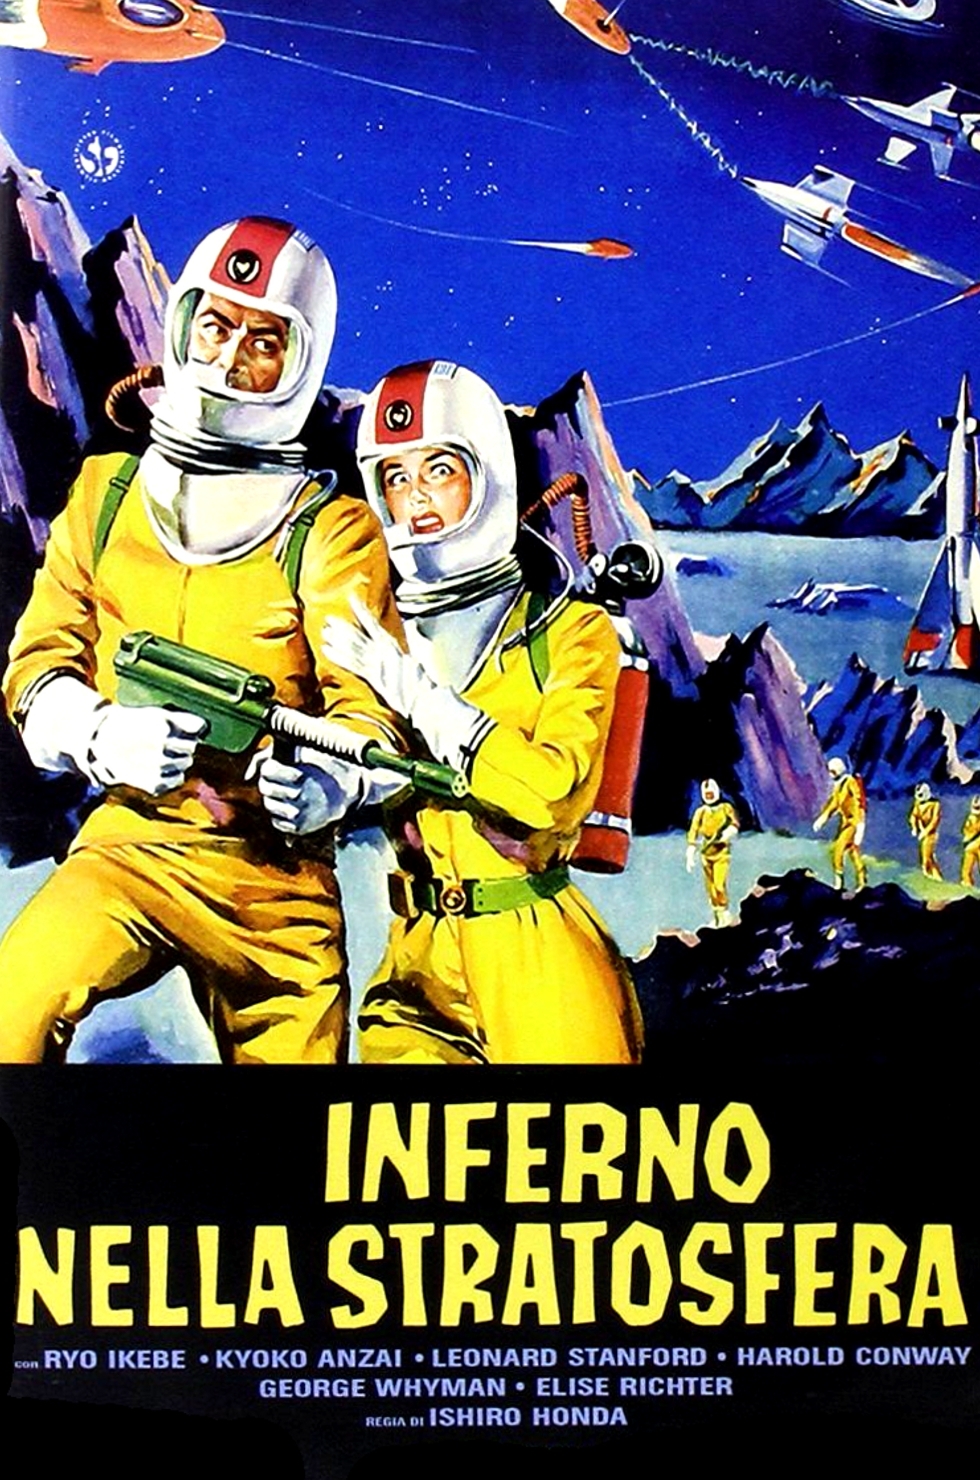 Inferno nella stratosfera [HD] (1959)